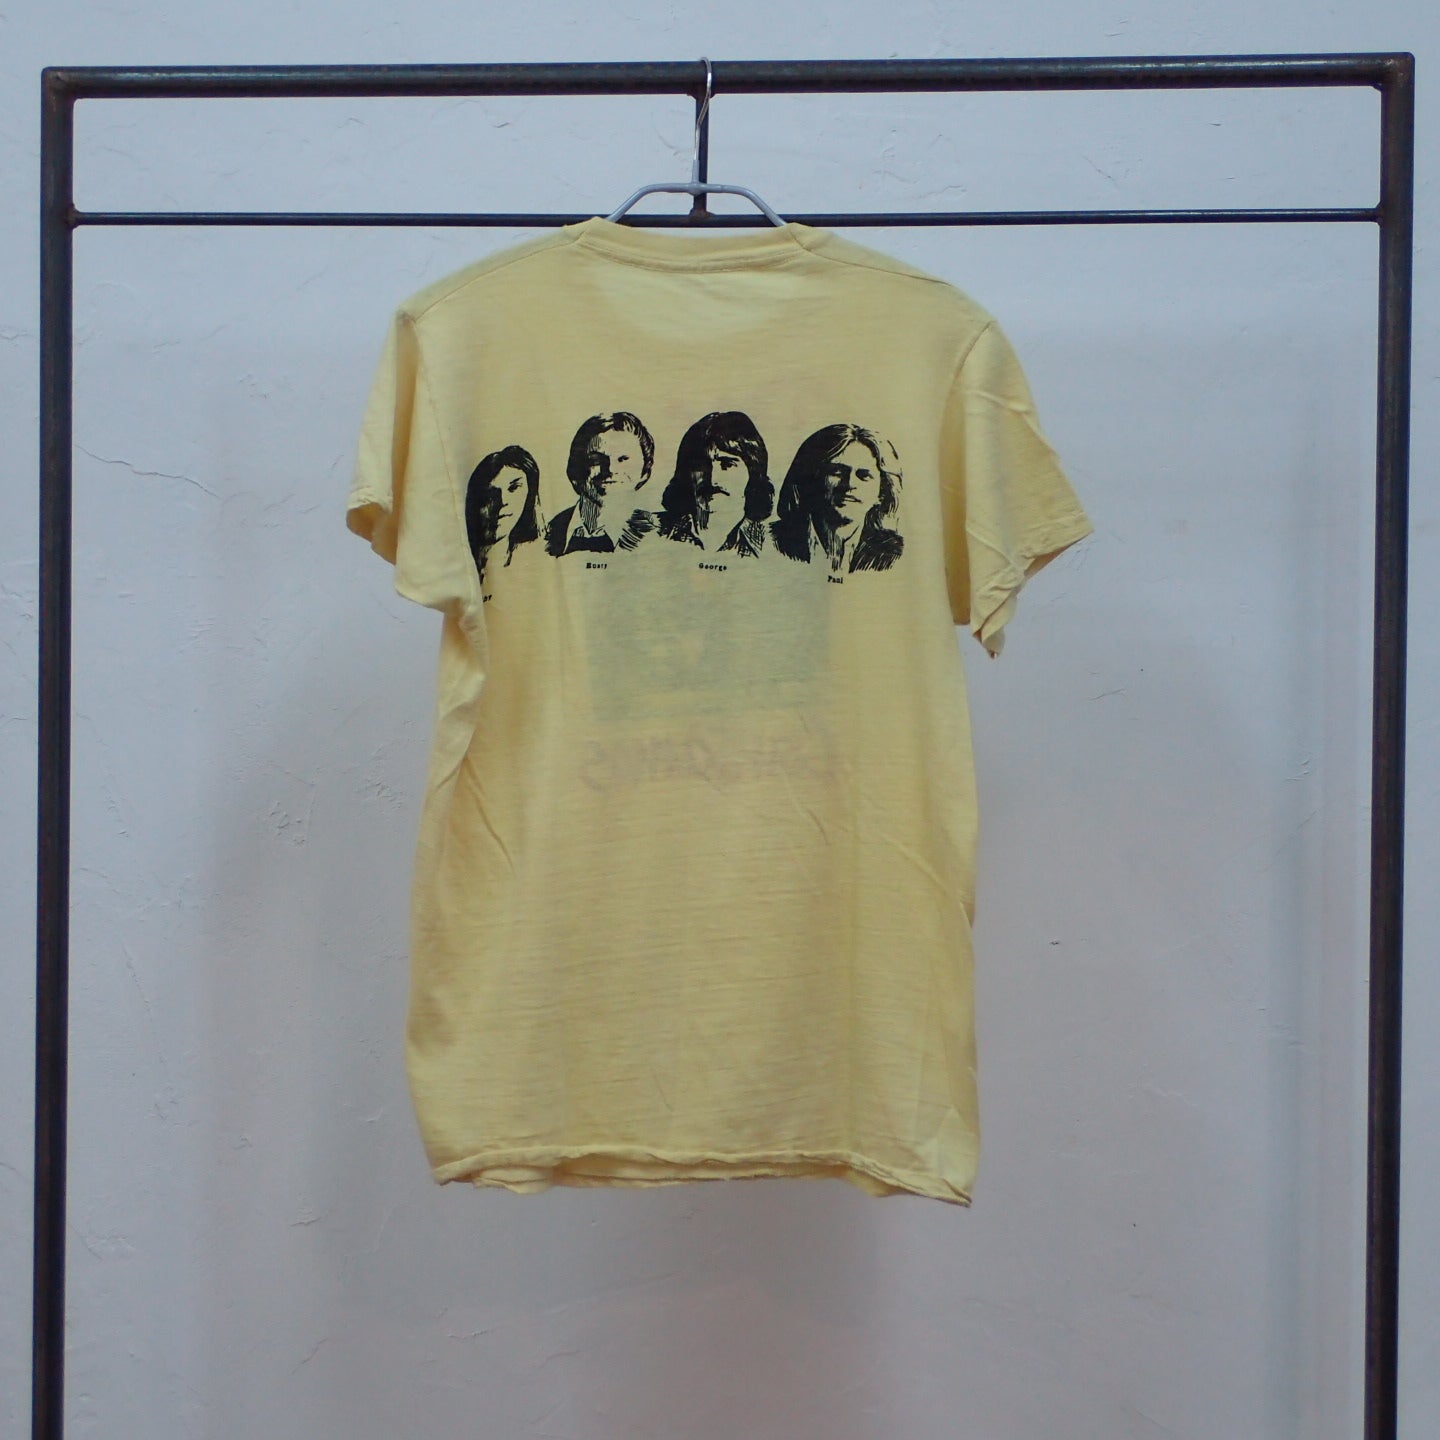 70s Poco T-shirt "Cantamos Tee"